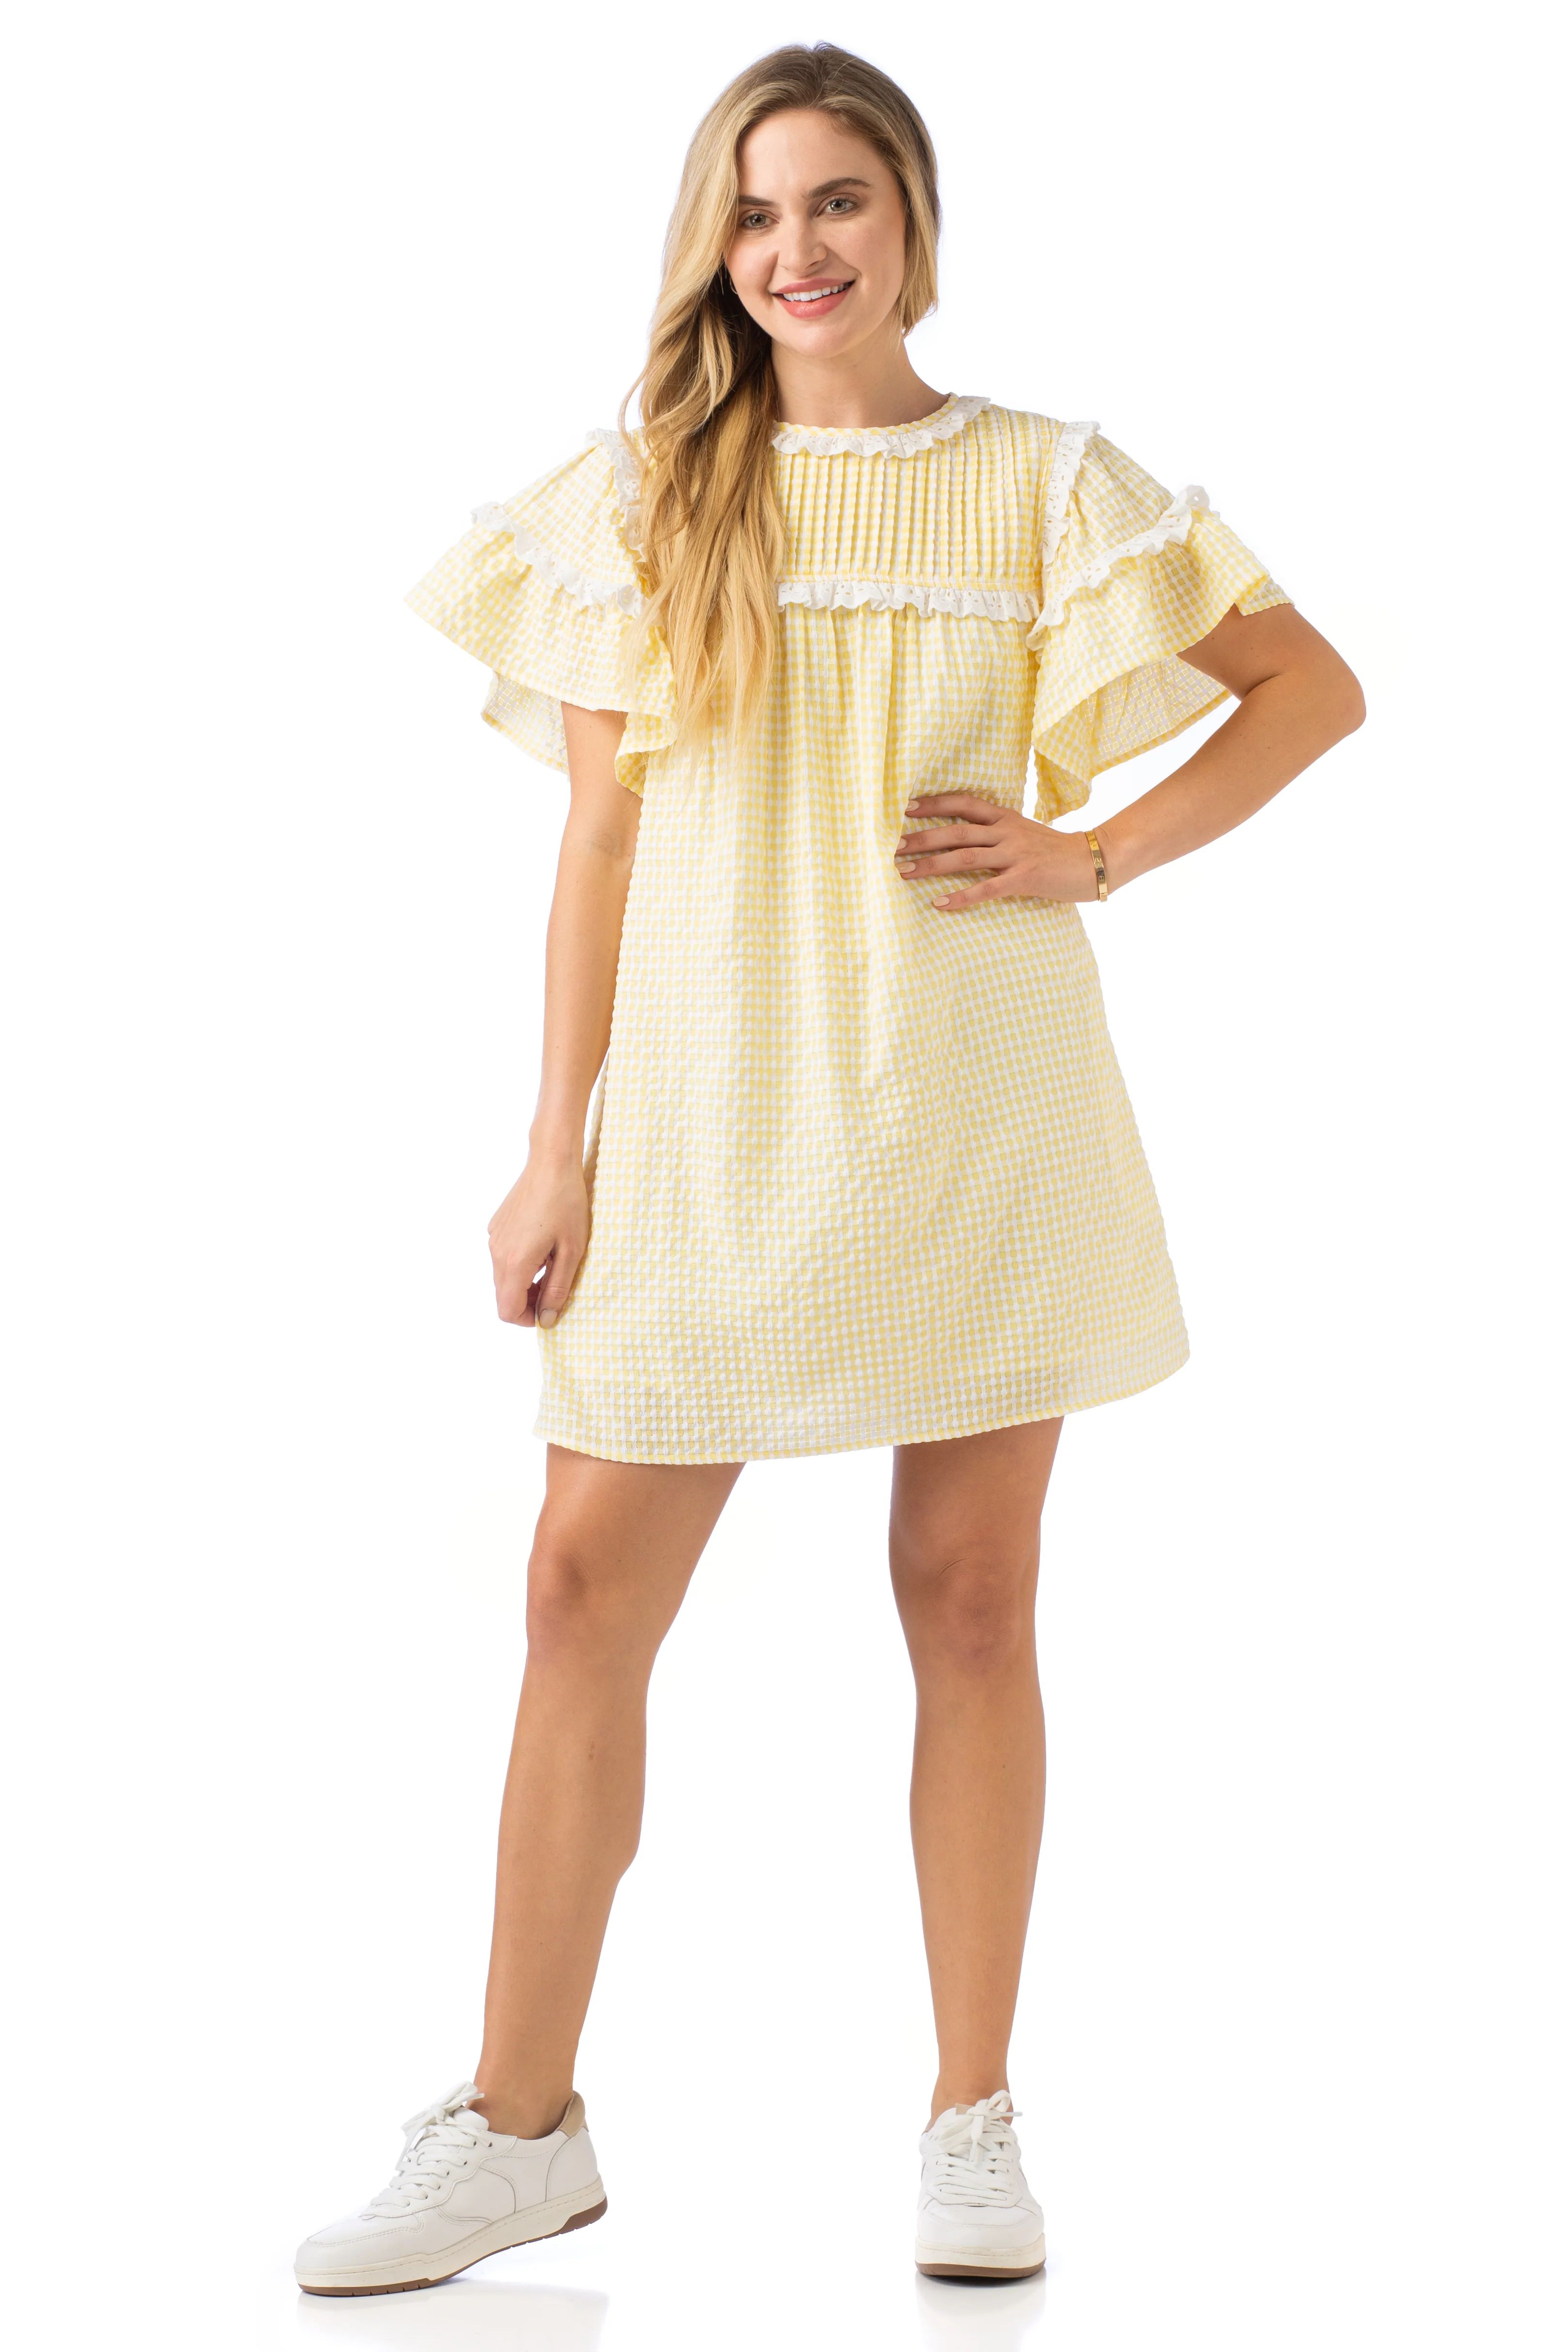 Hadley Dress- in Sunshine Seersucker | CROSBY by Mollie Burch